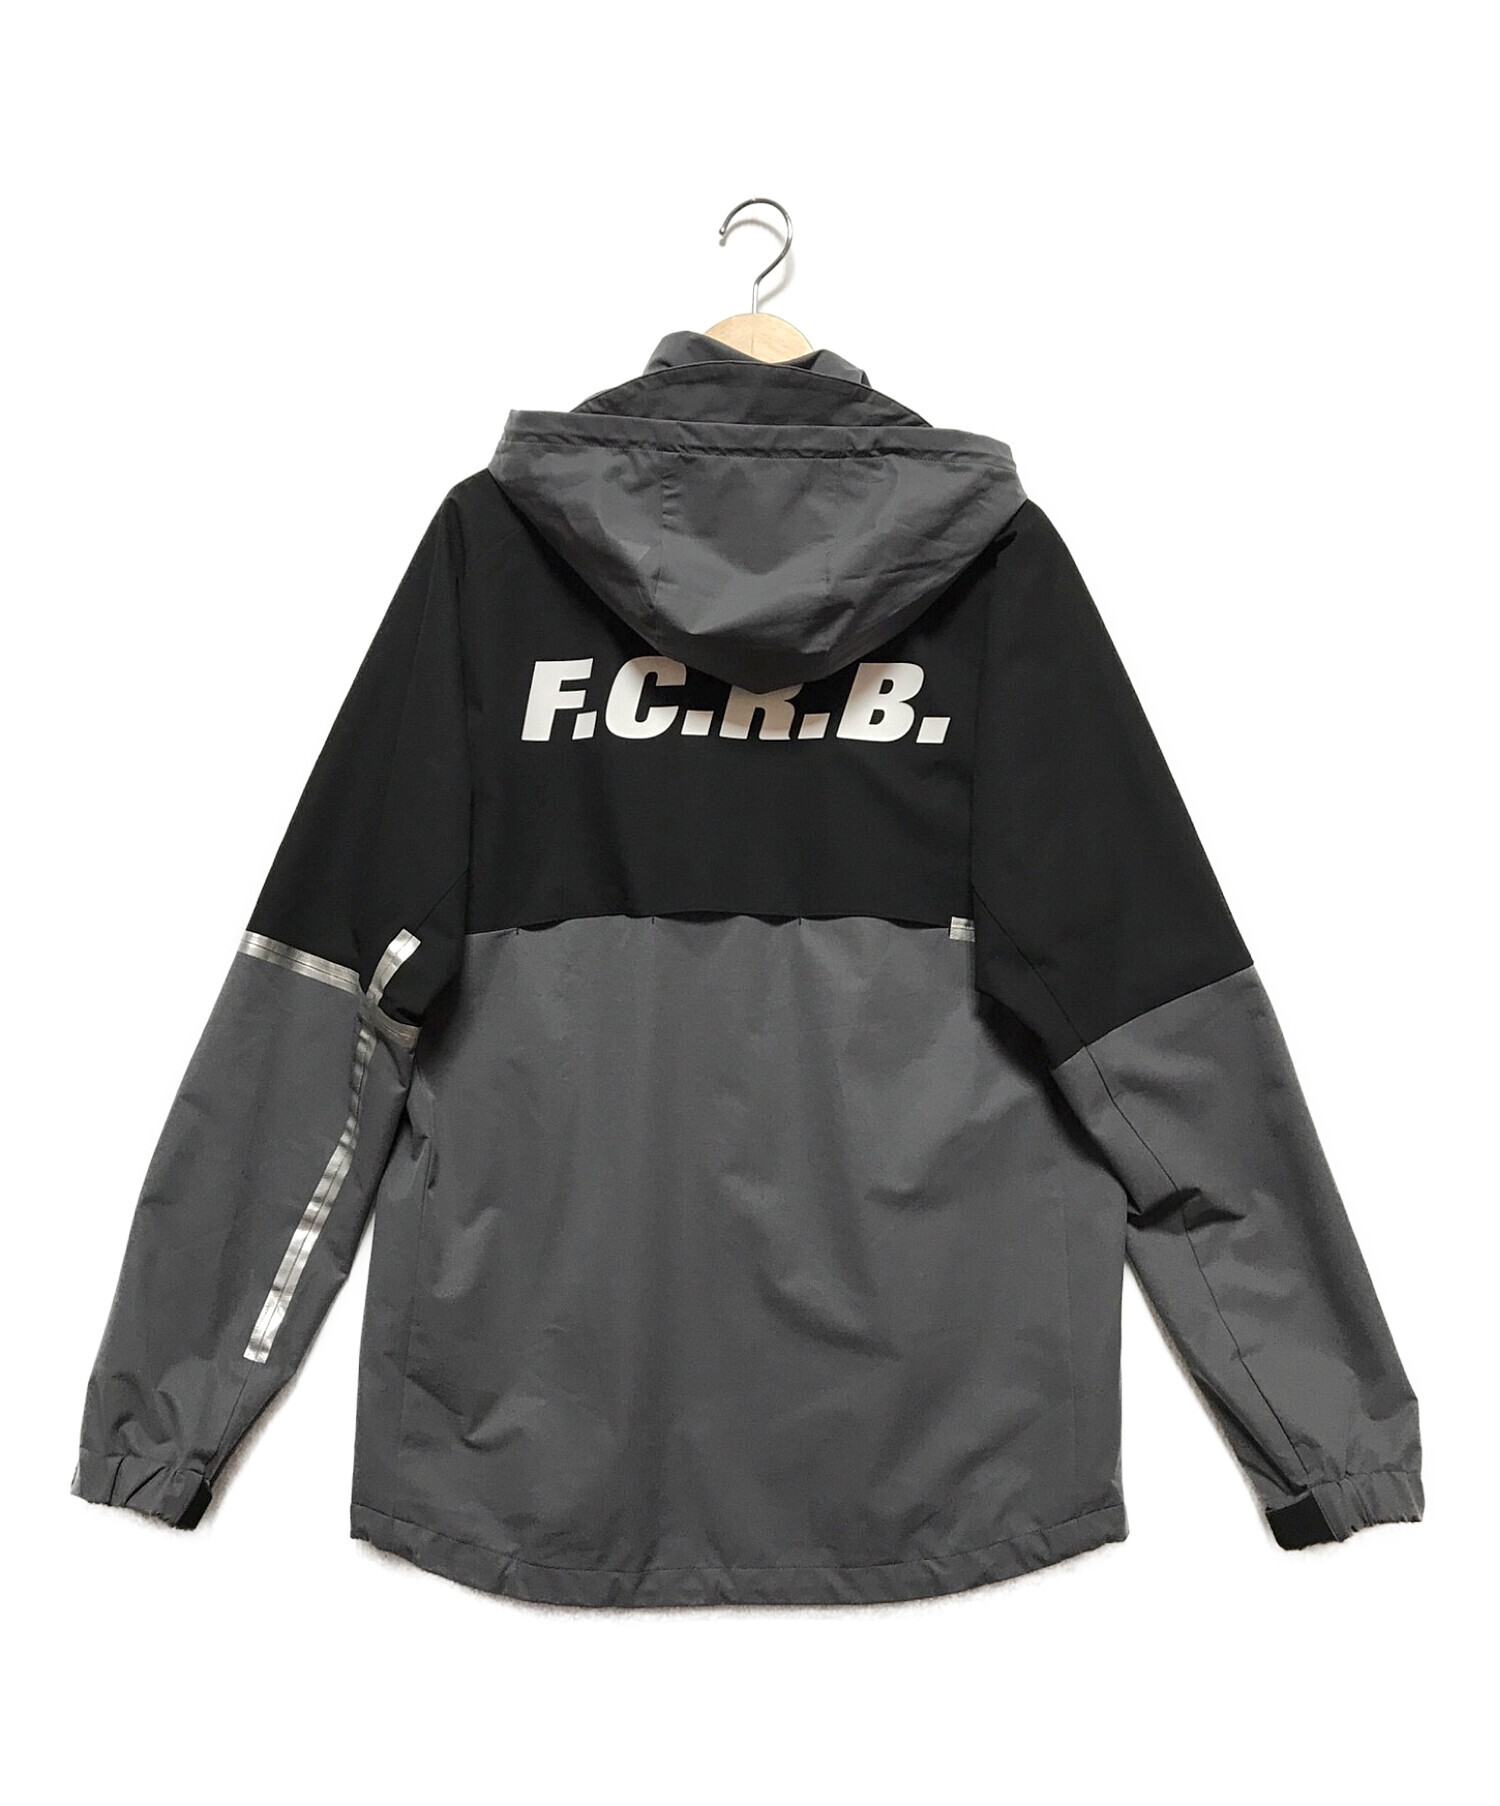 F.C.R.B. (エフシーアールビー) ウォームアップジャケット グレー×ブラック サイズ:L